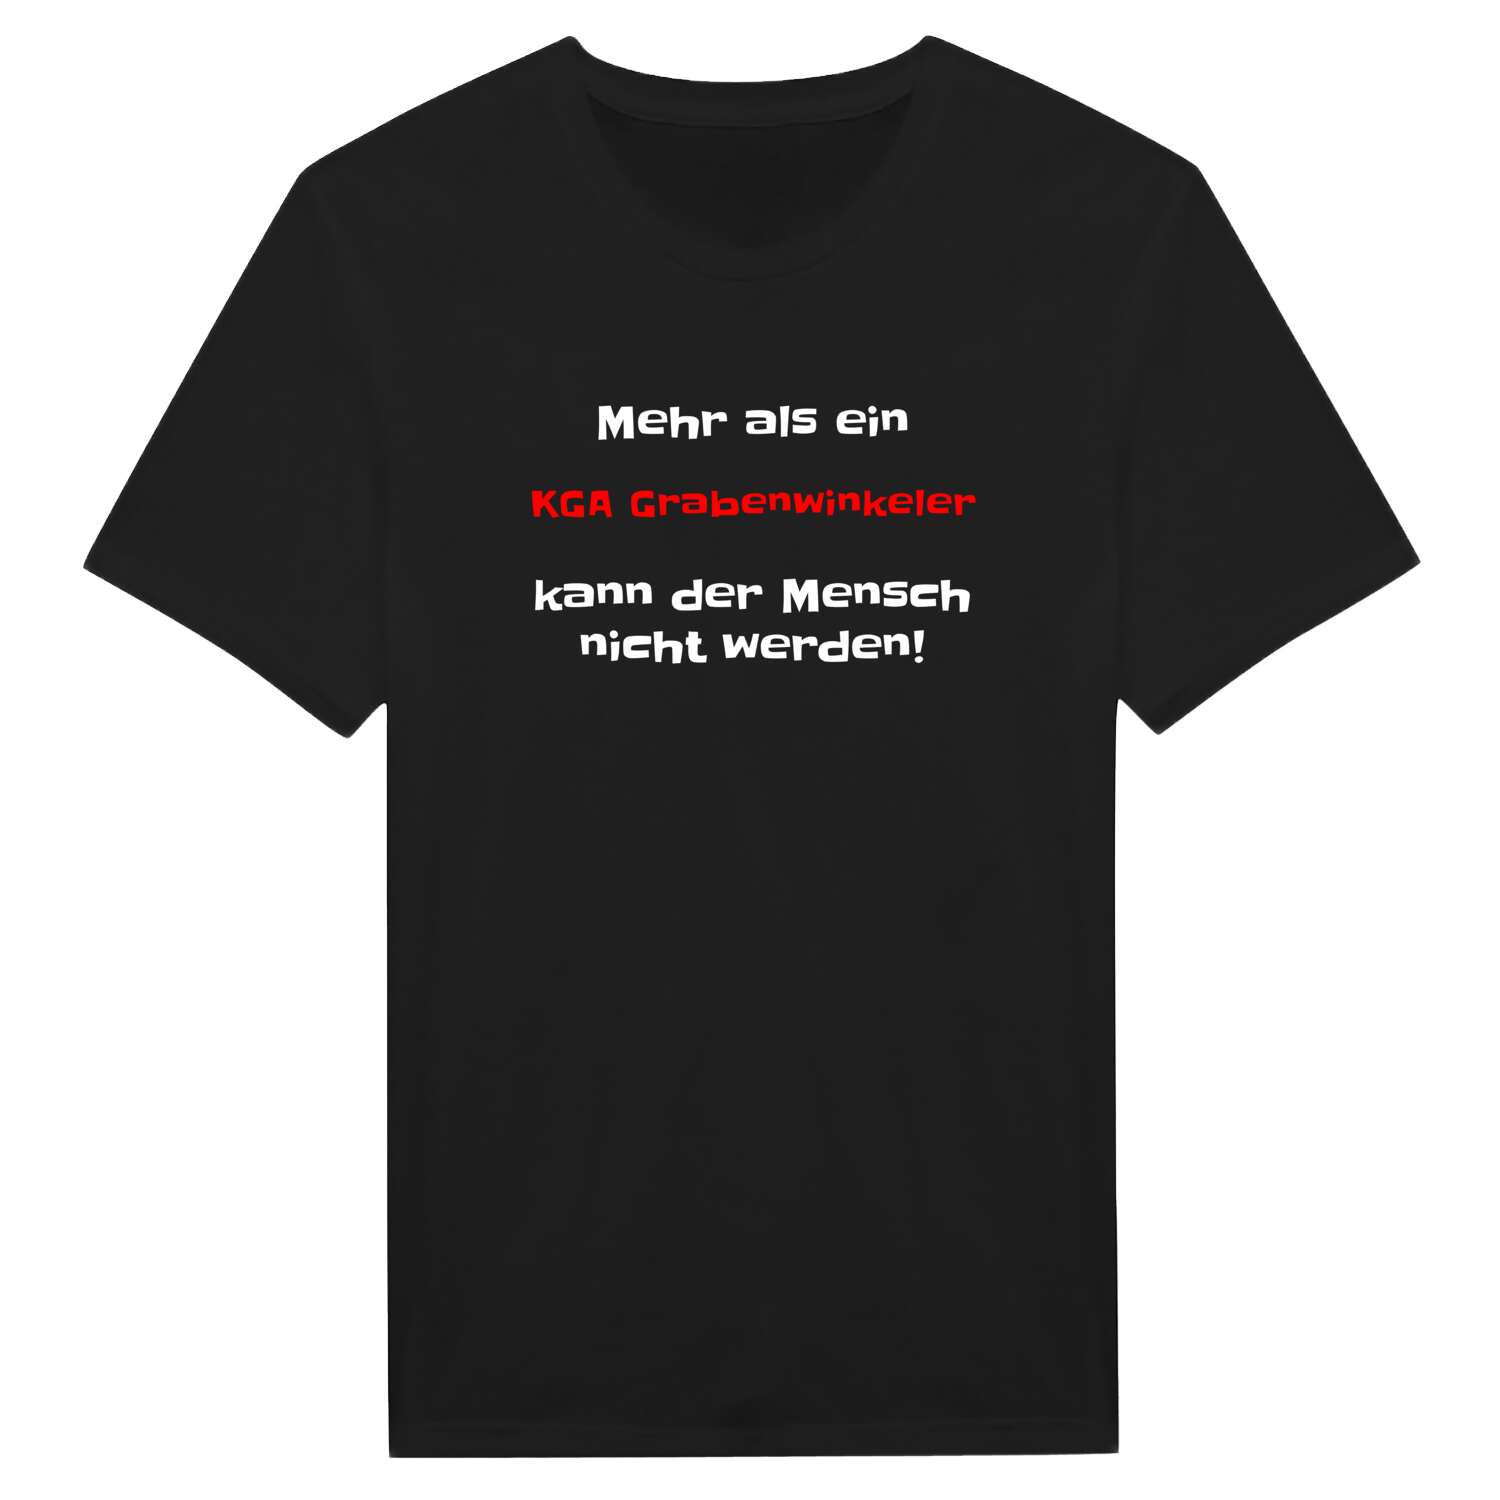 KGA Grabenwinkel T-Shirt »Mehr als ein«